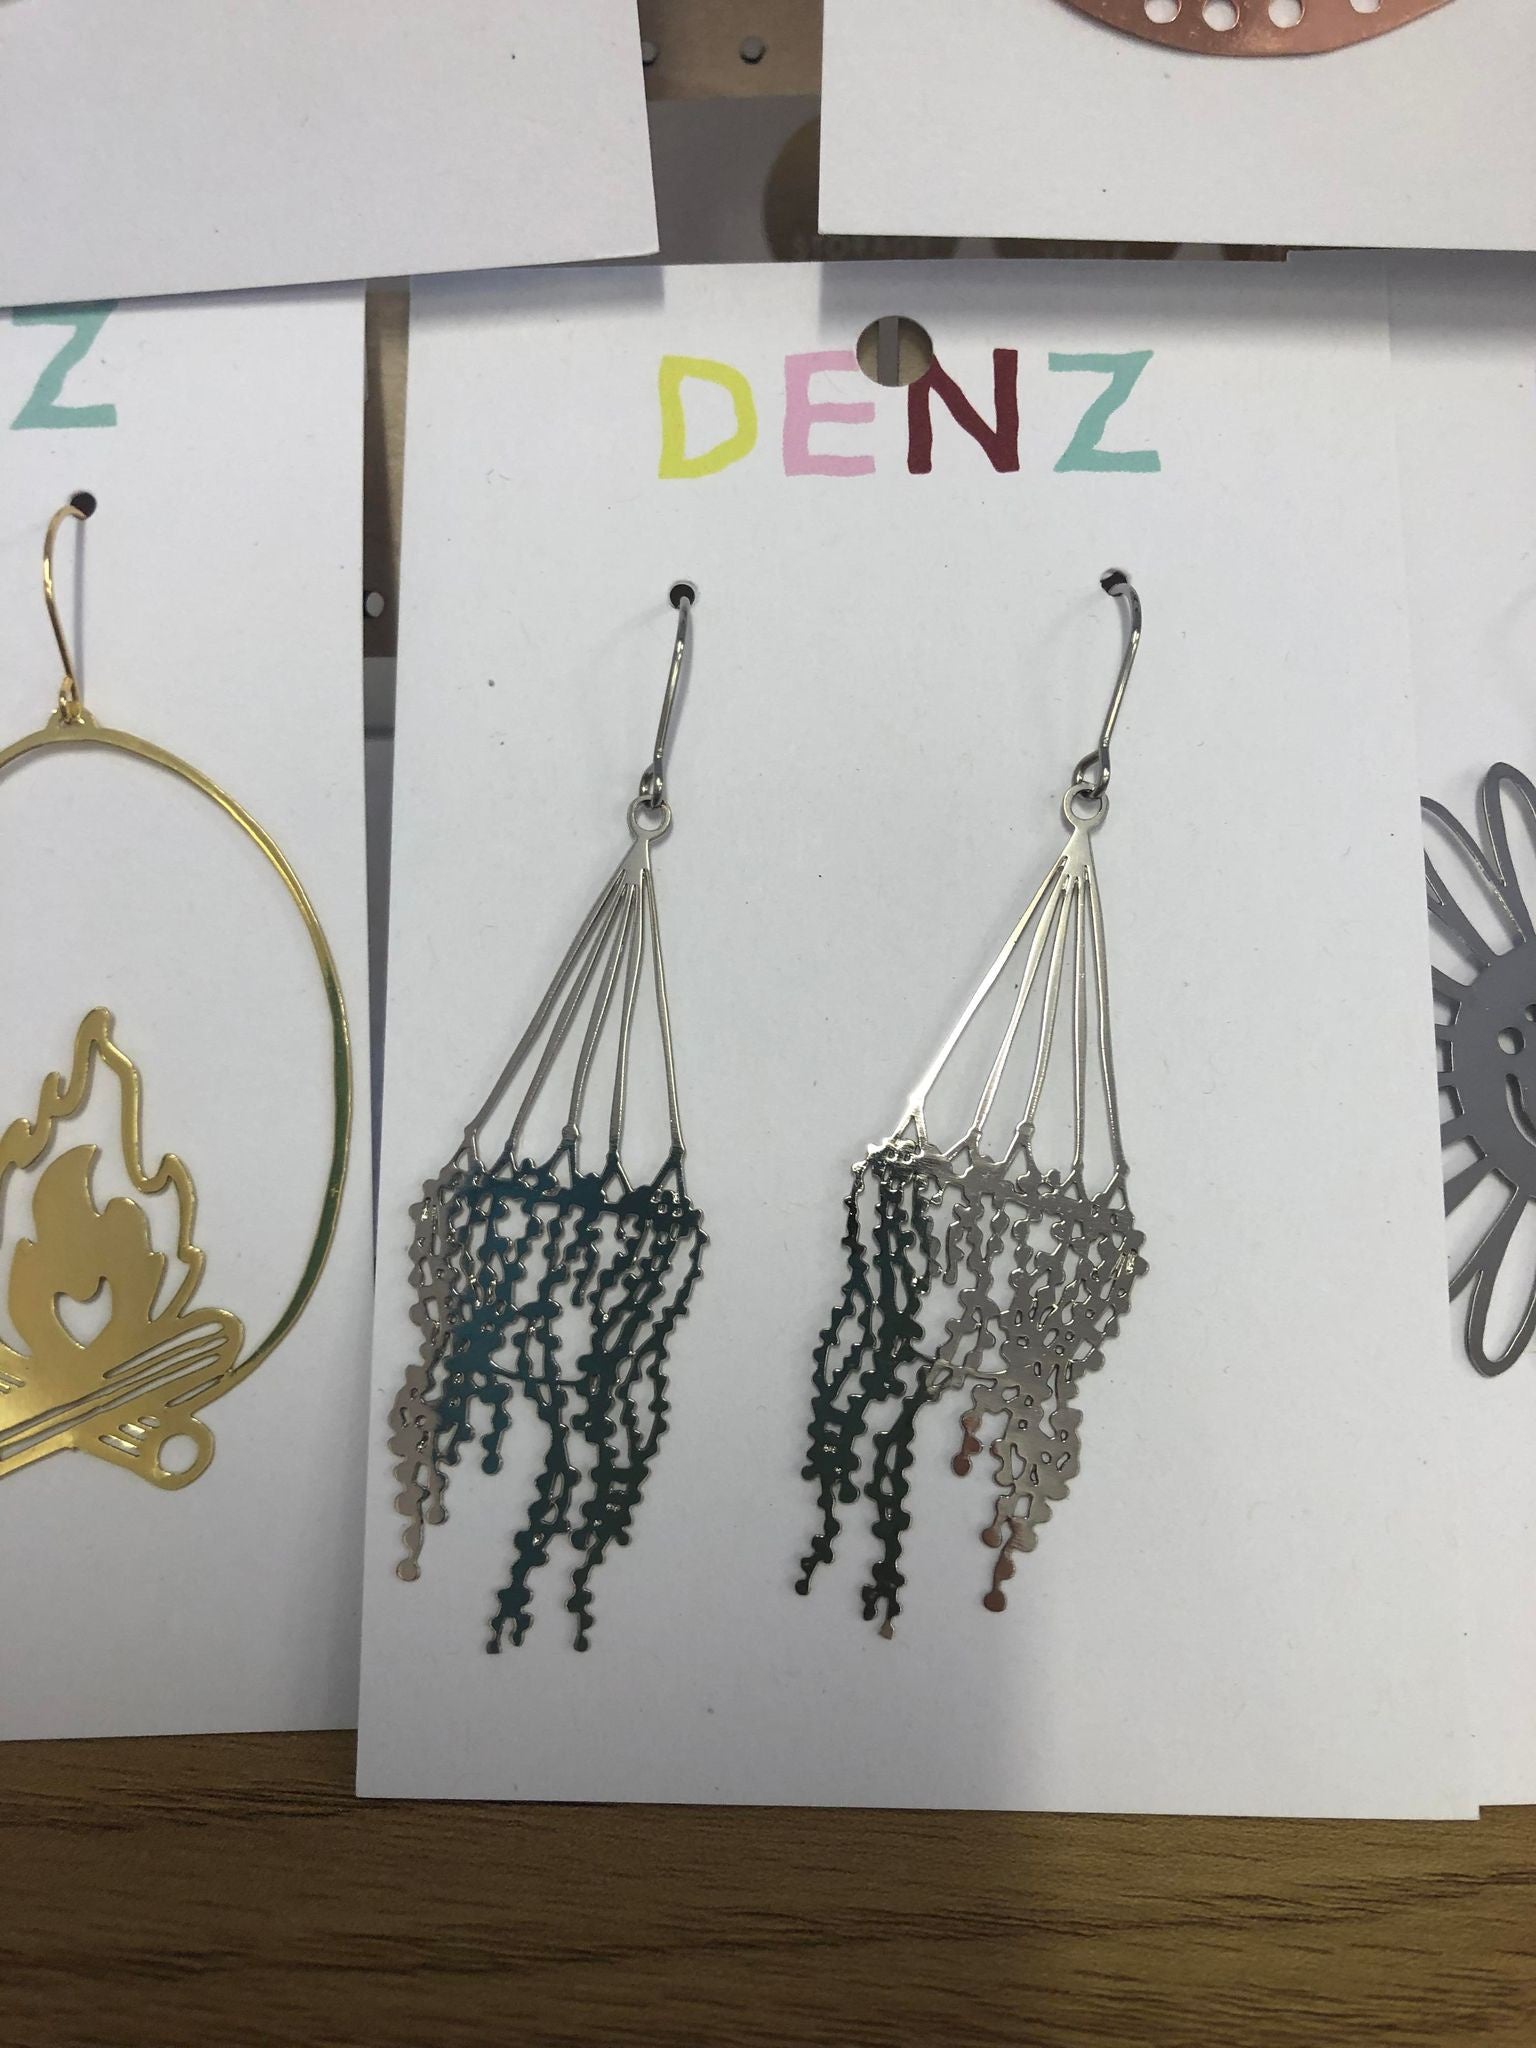 Denz hanging basket #2 silver